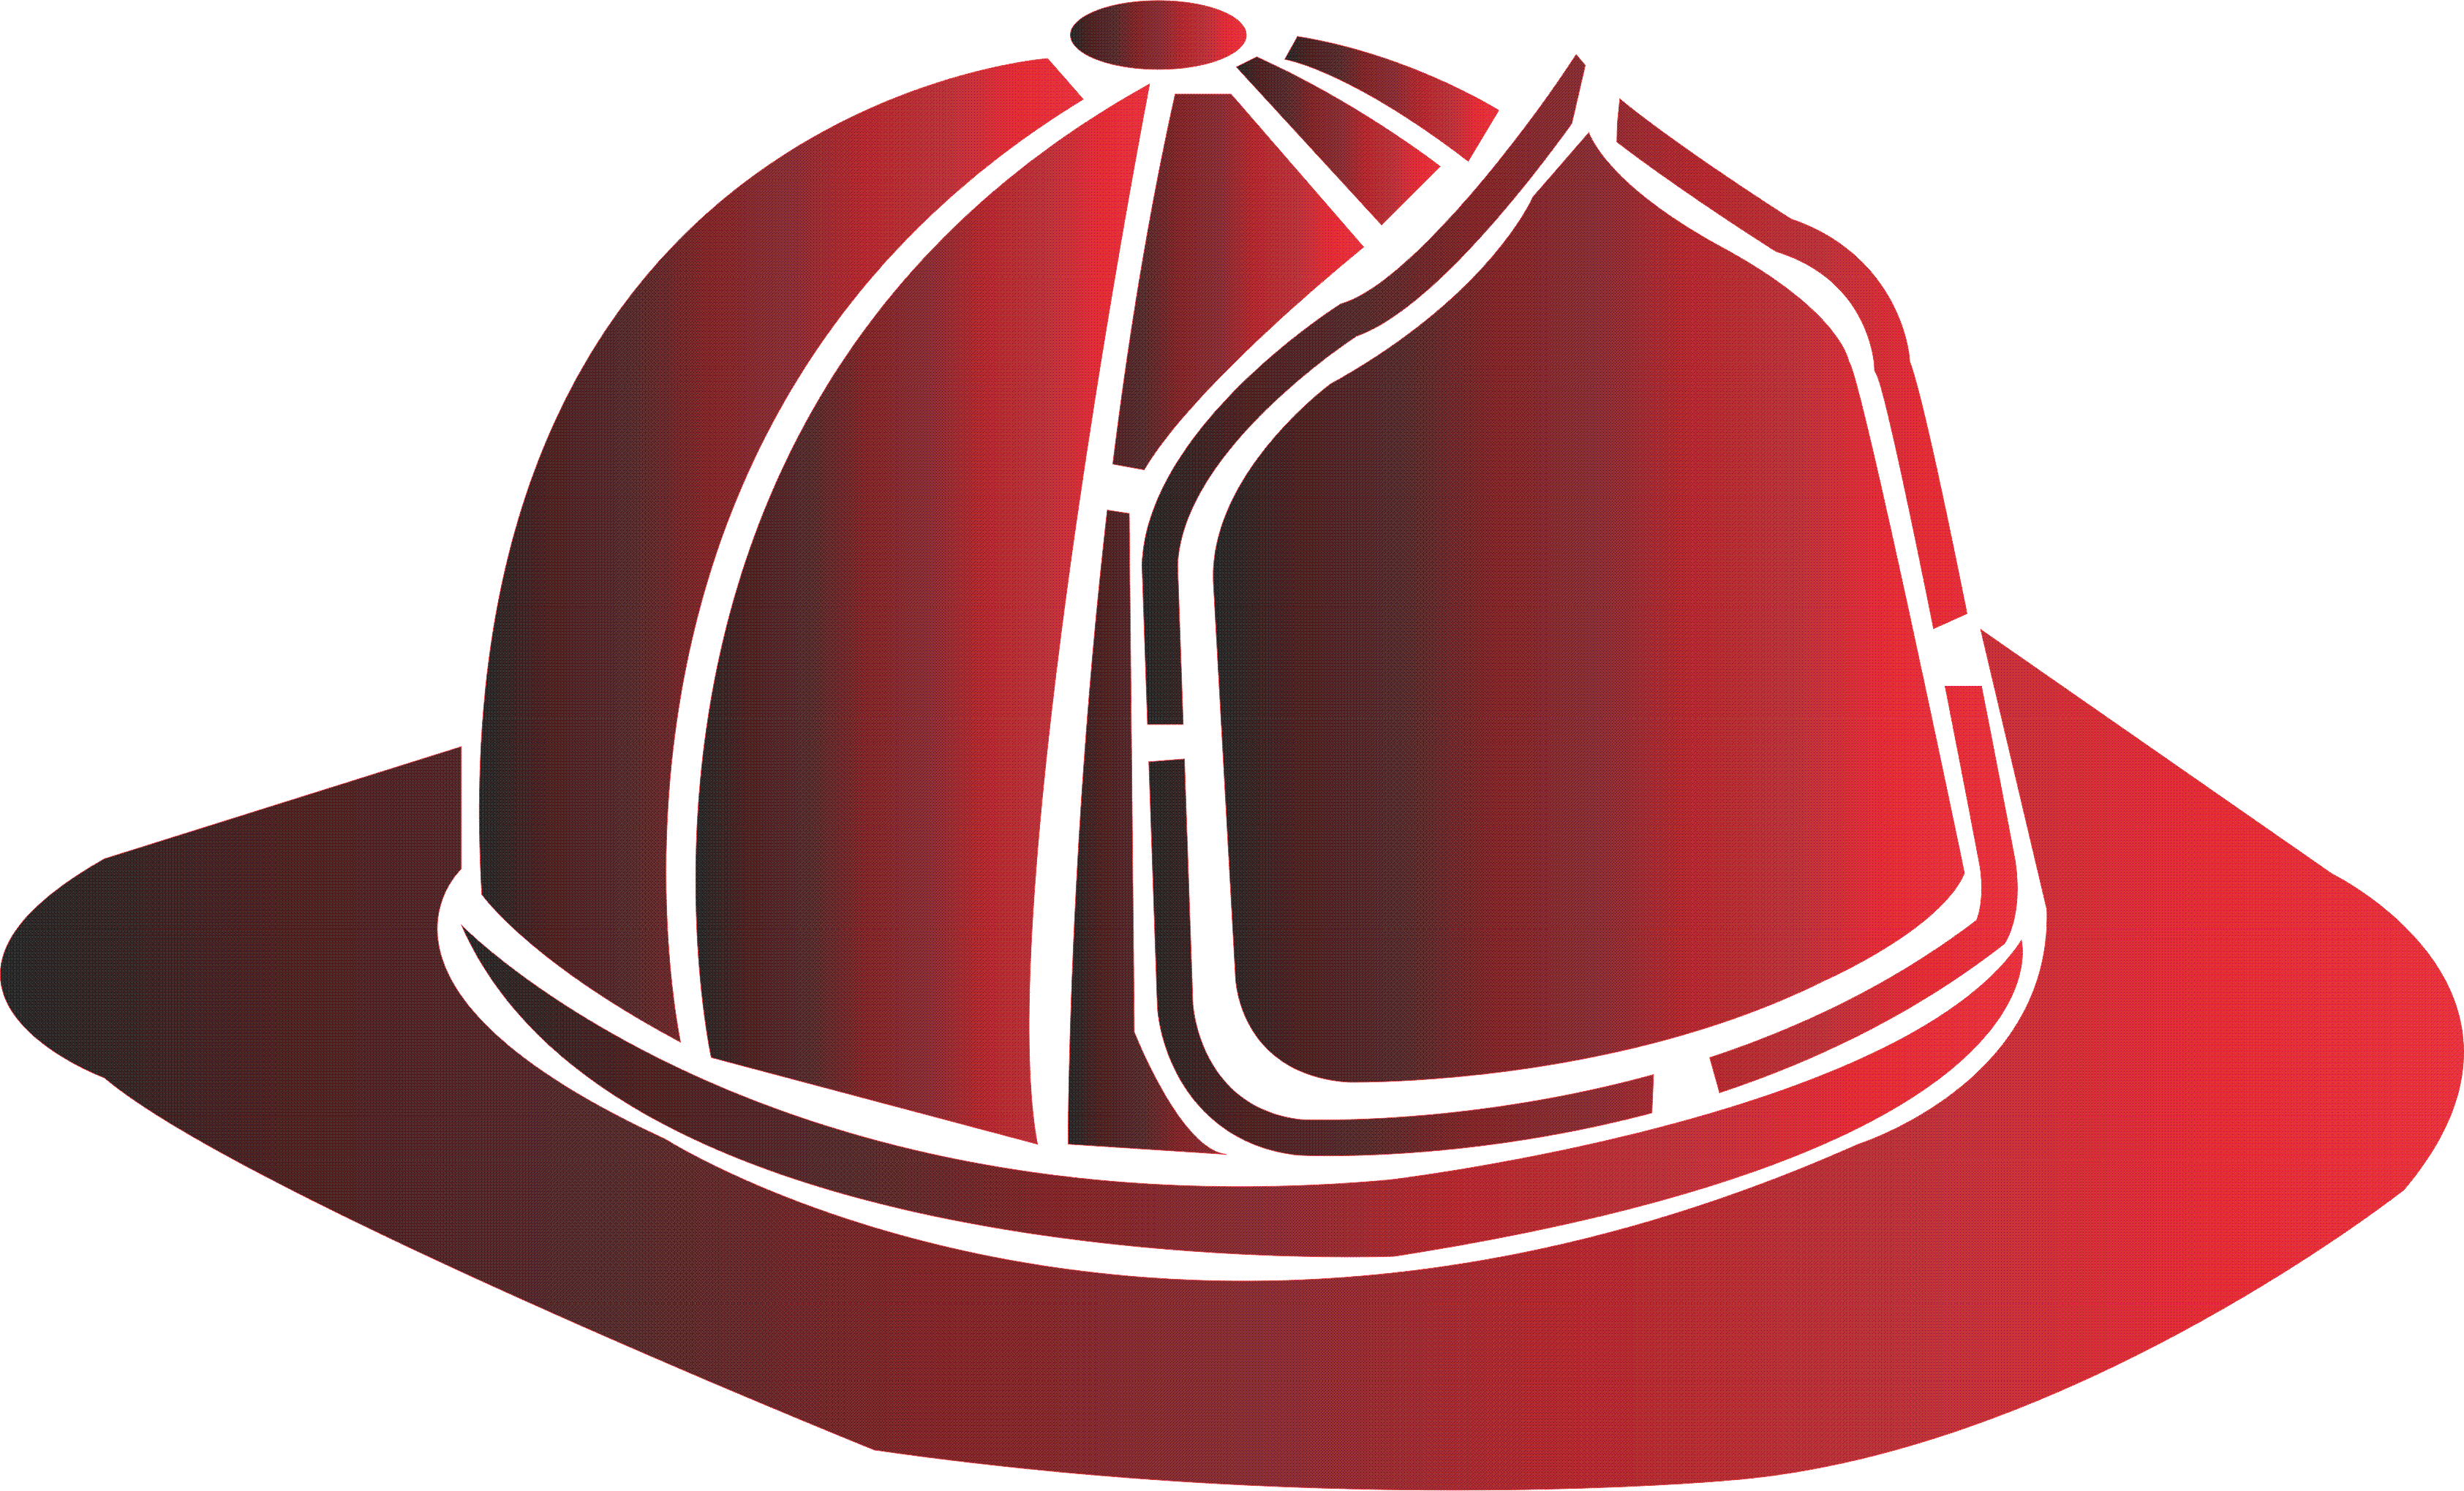 Fire Helmet Clip Art Front View Fire Fighting Equipment Emblem